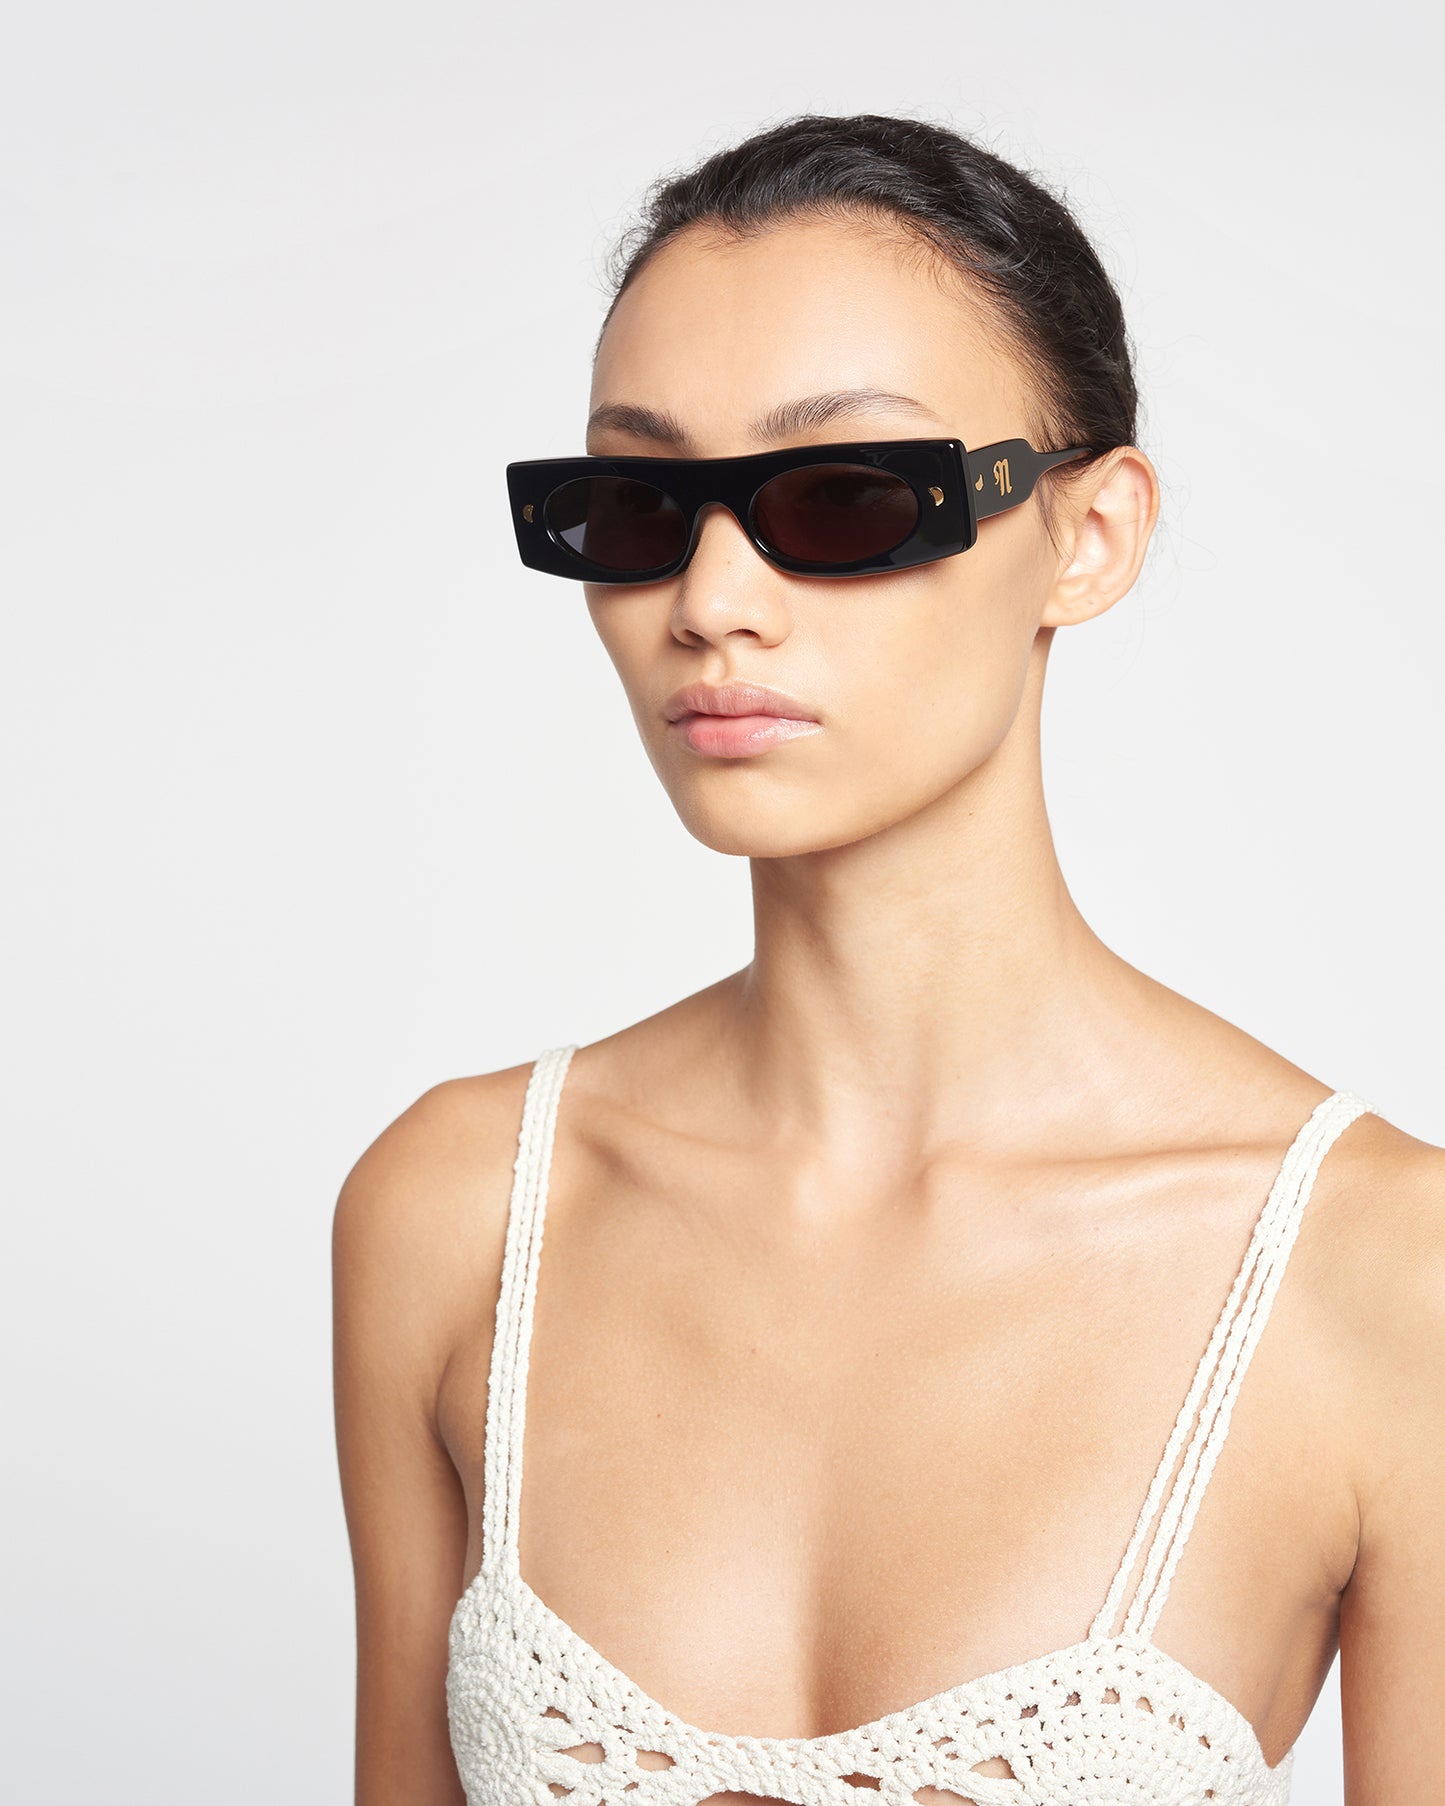 Ruthie - Bio-Plastic Visor Sunglasses - Black